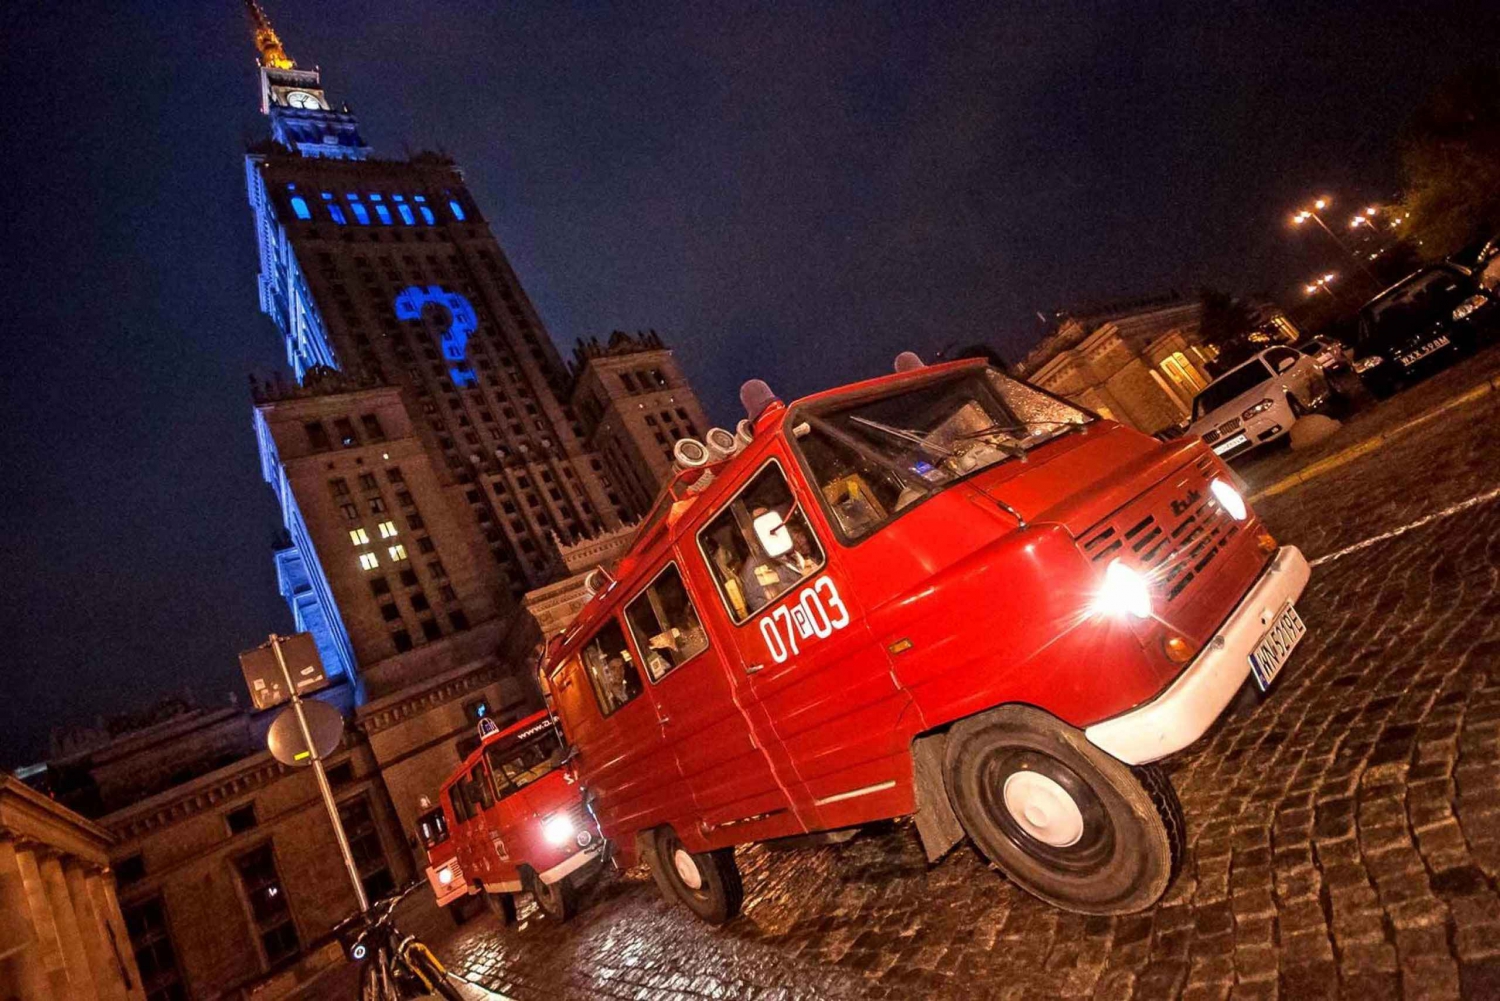 Warszawa: Historie- og pubtur om aftenen med retro-minibus